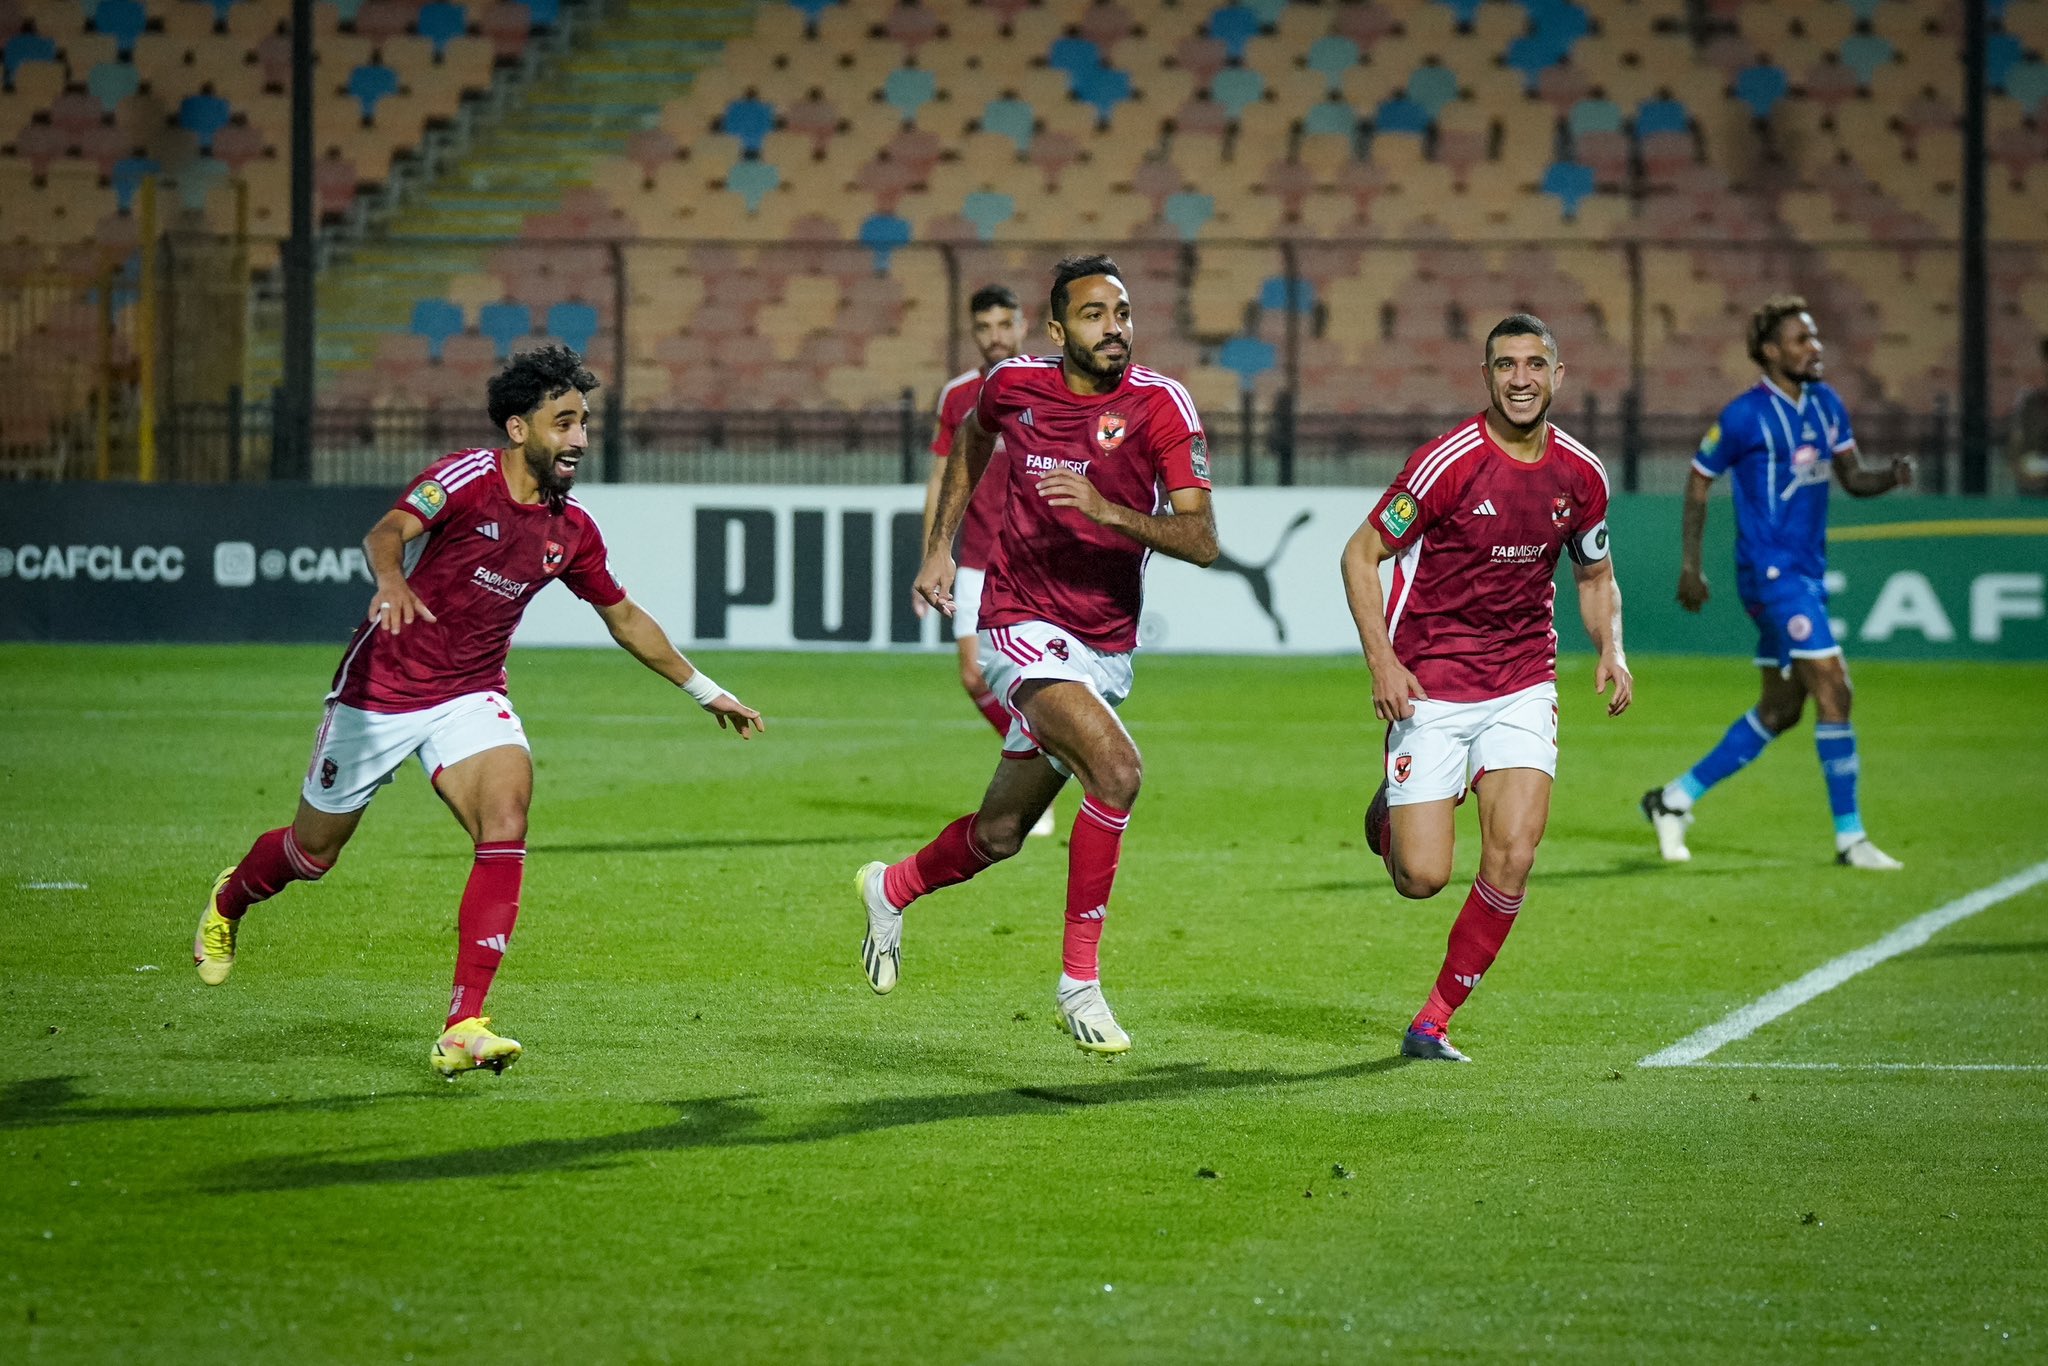 GKb1kj WsAE1Sq6 الأهلي المصري إلي نصف دوري أبطال أفريقيا للمرة الـ 20 في تاريخه